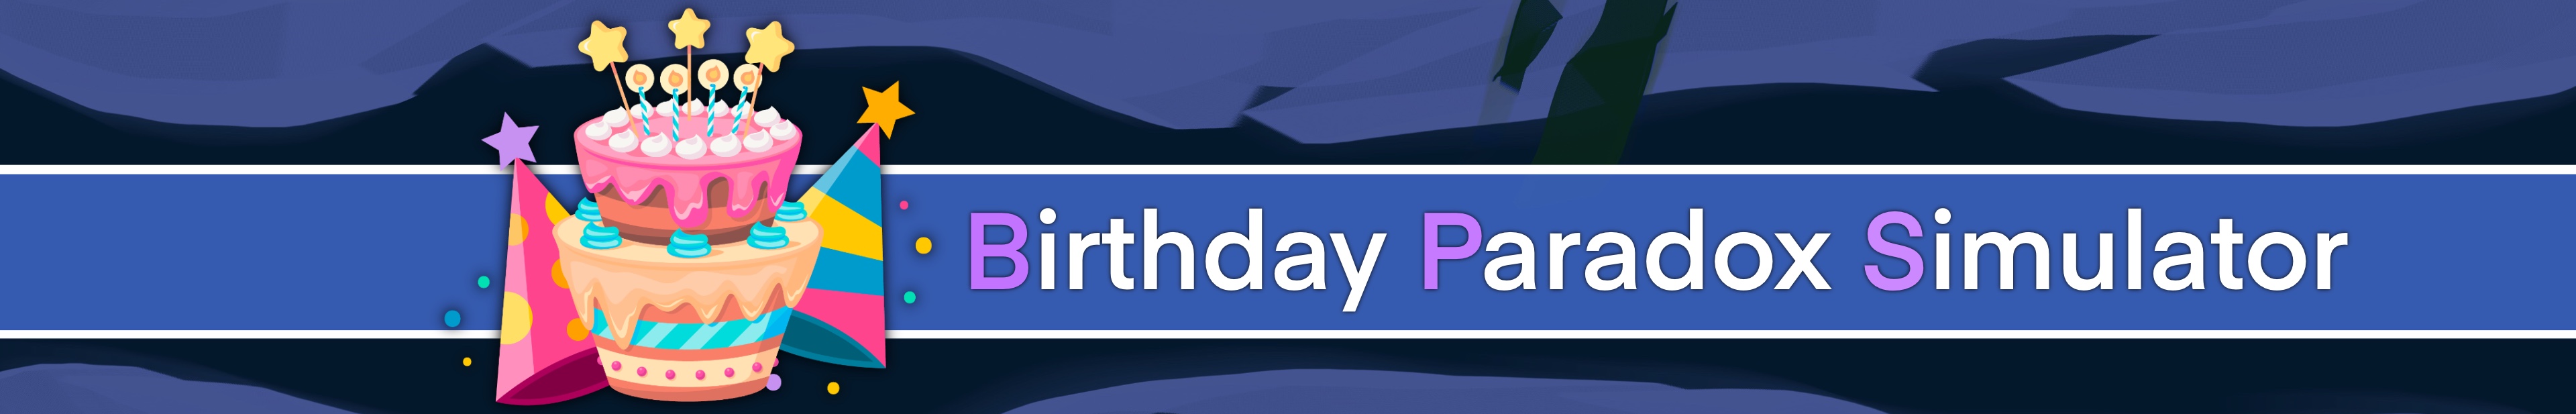 Birthday Paradox Simulator